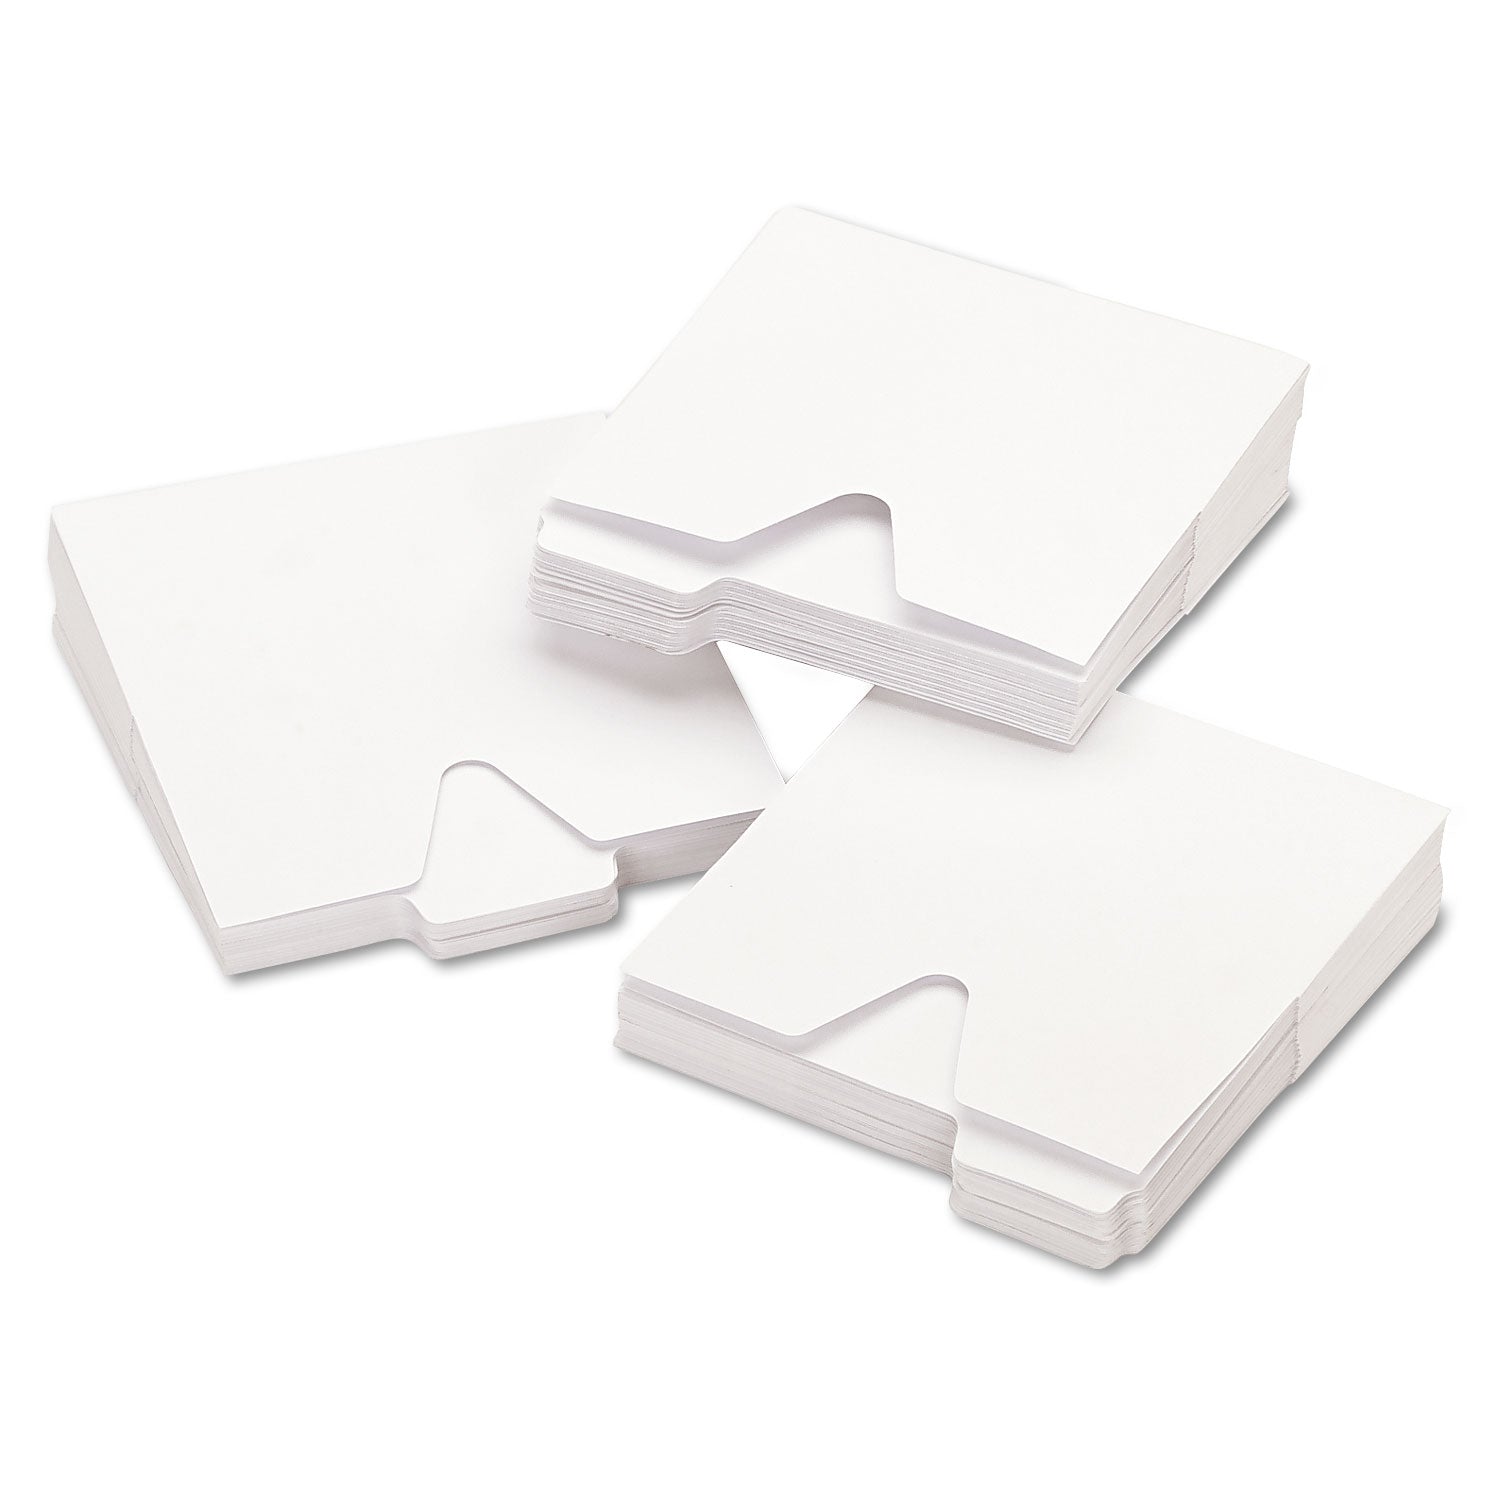 CD File Folders, 1 Disc Capacity, White, 100/Pack - 